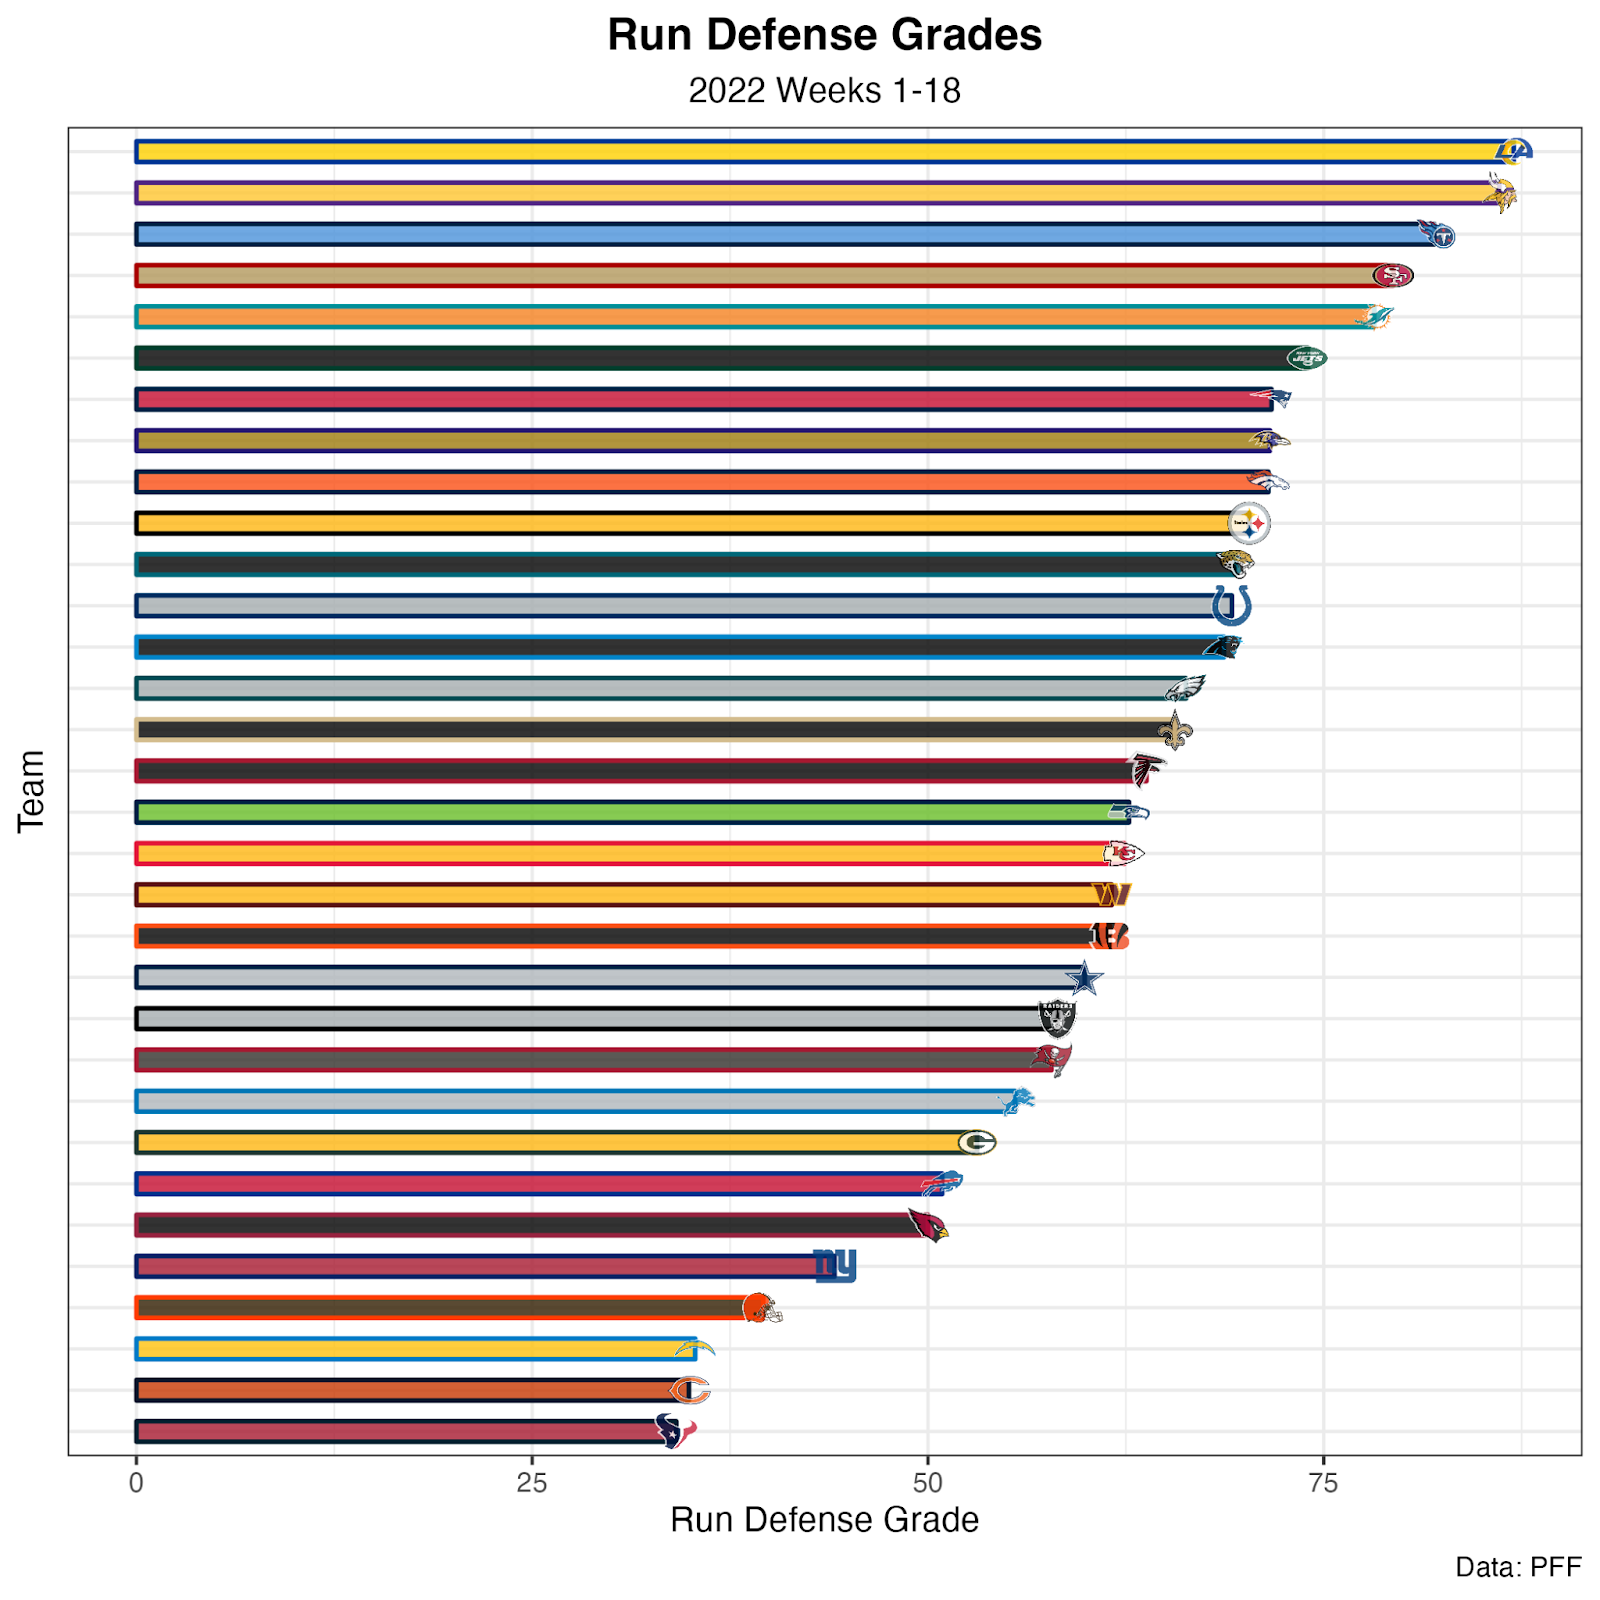 pff run defense rankings